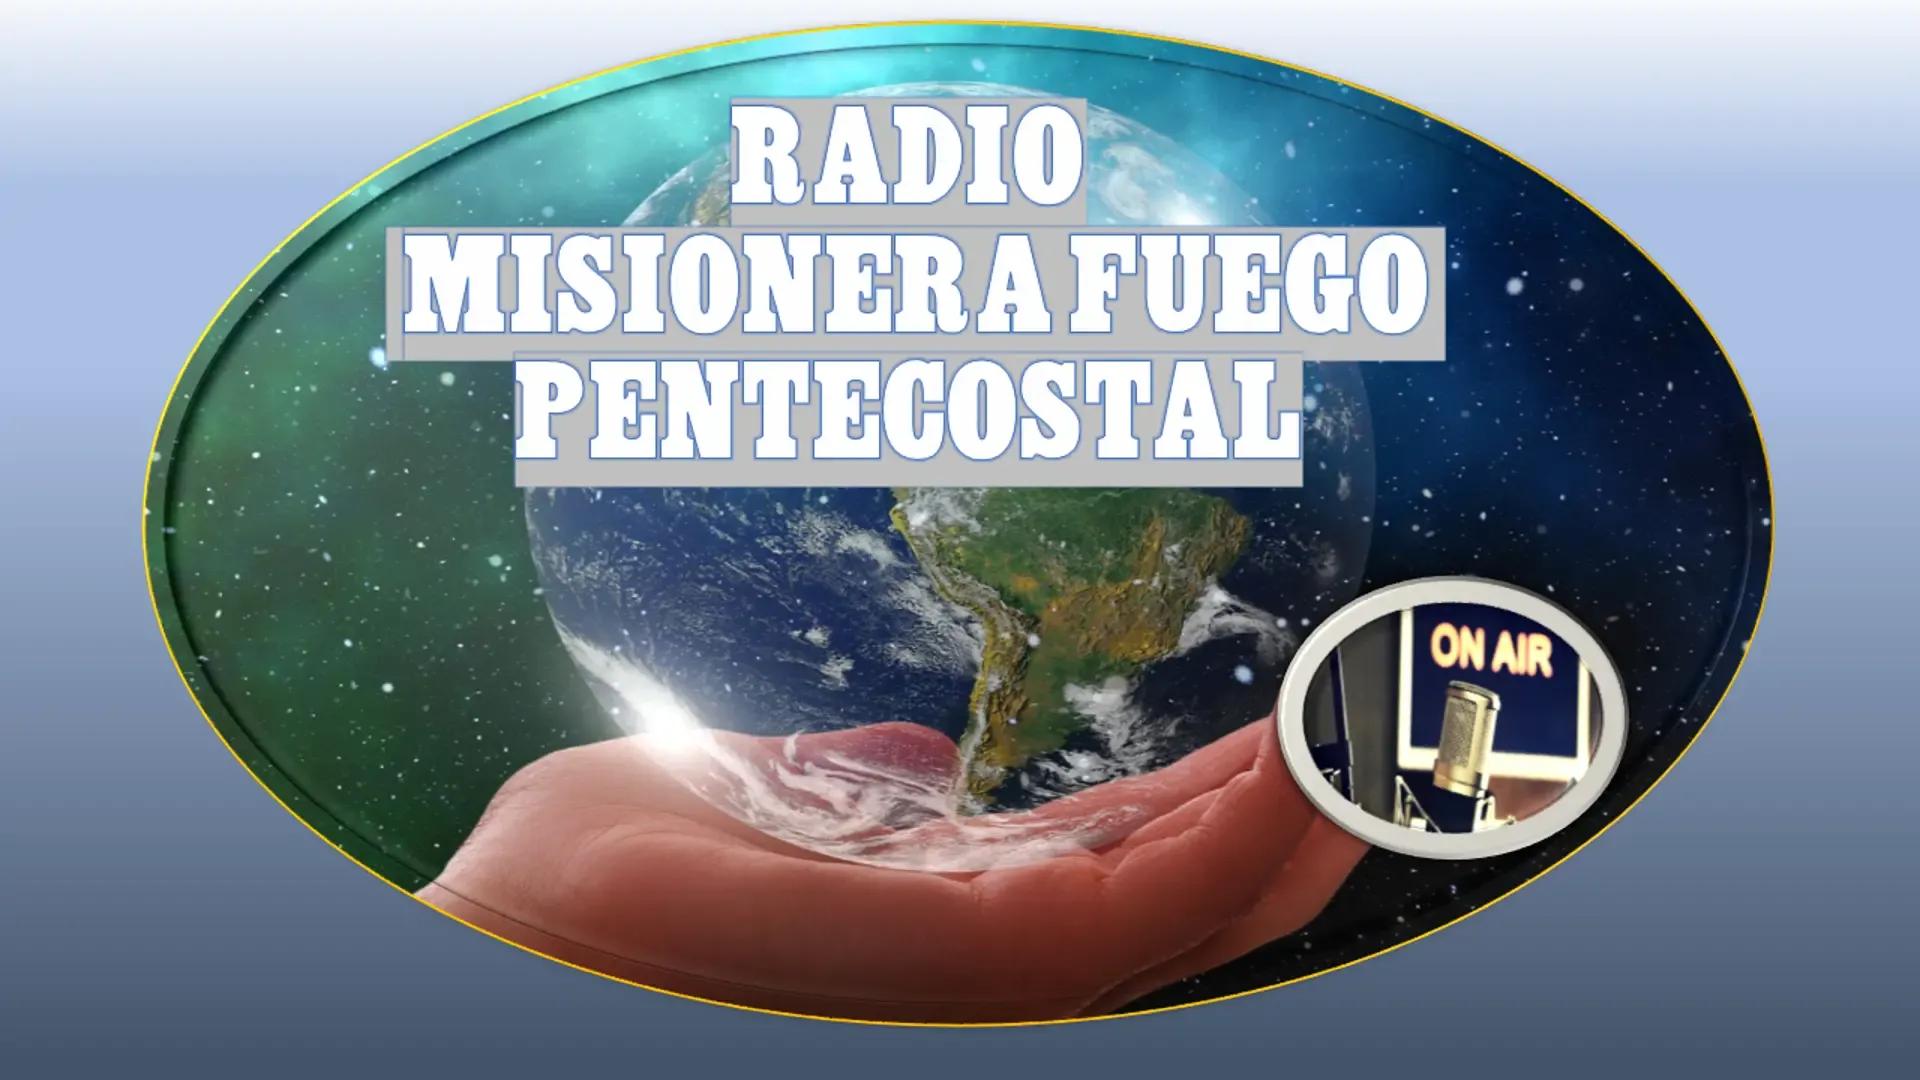 Radio Misionera Fuego Pentecostal